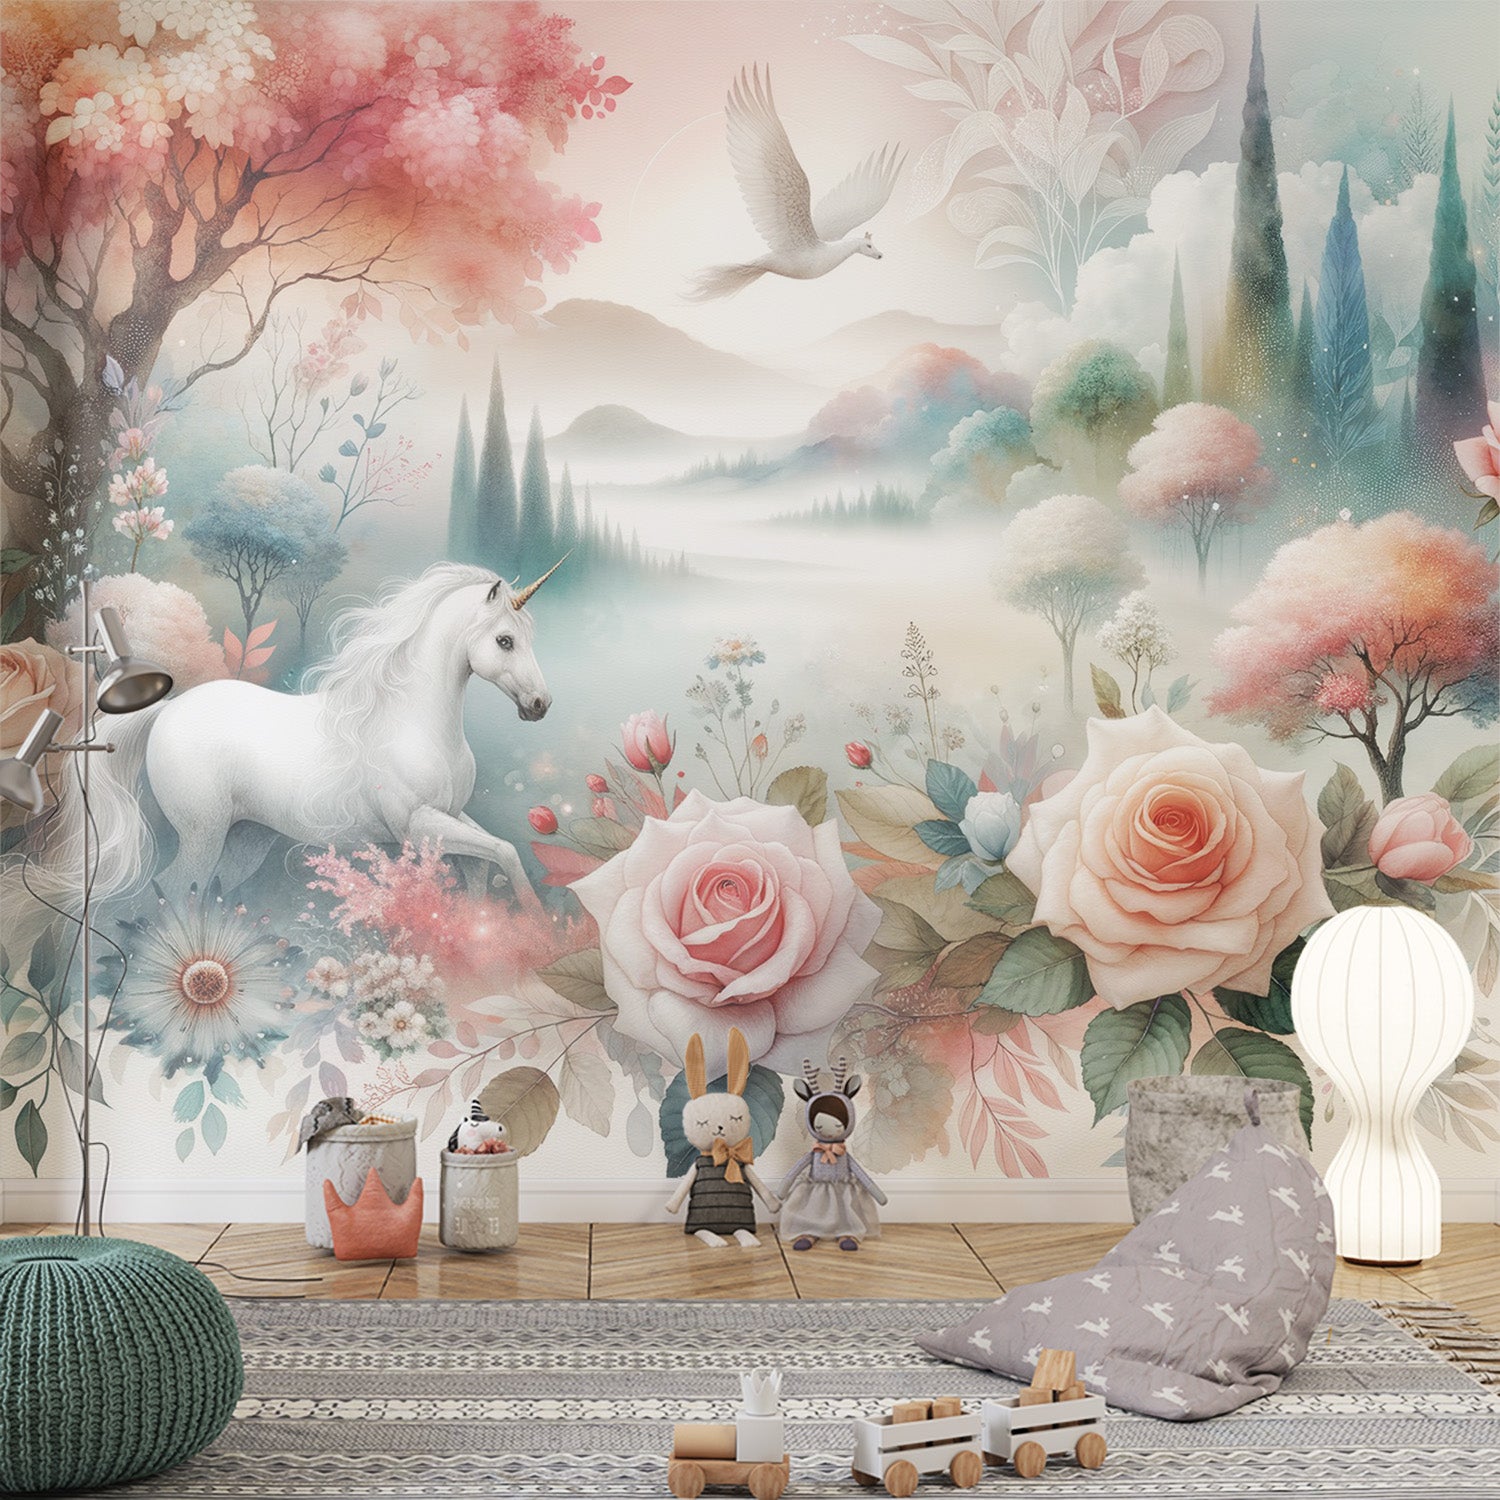  Papier peint licorne Animaux imaginaire avec compositions de roses fleuries